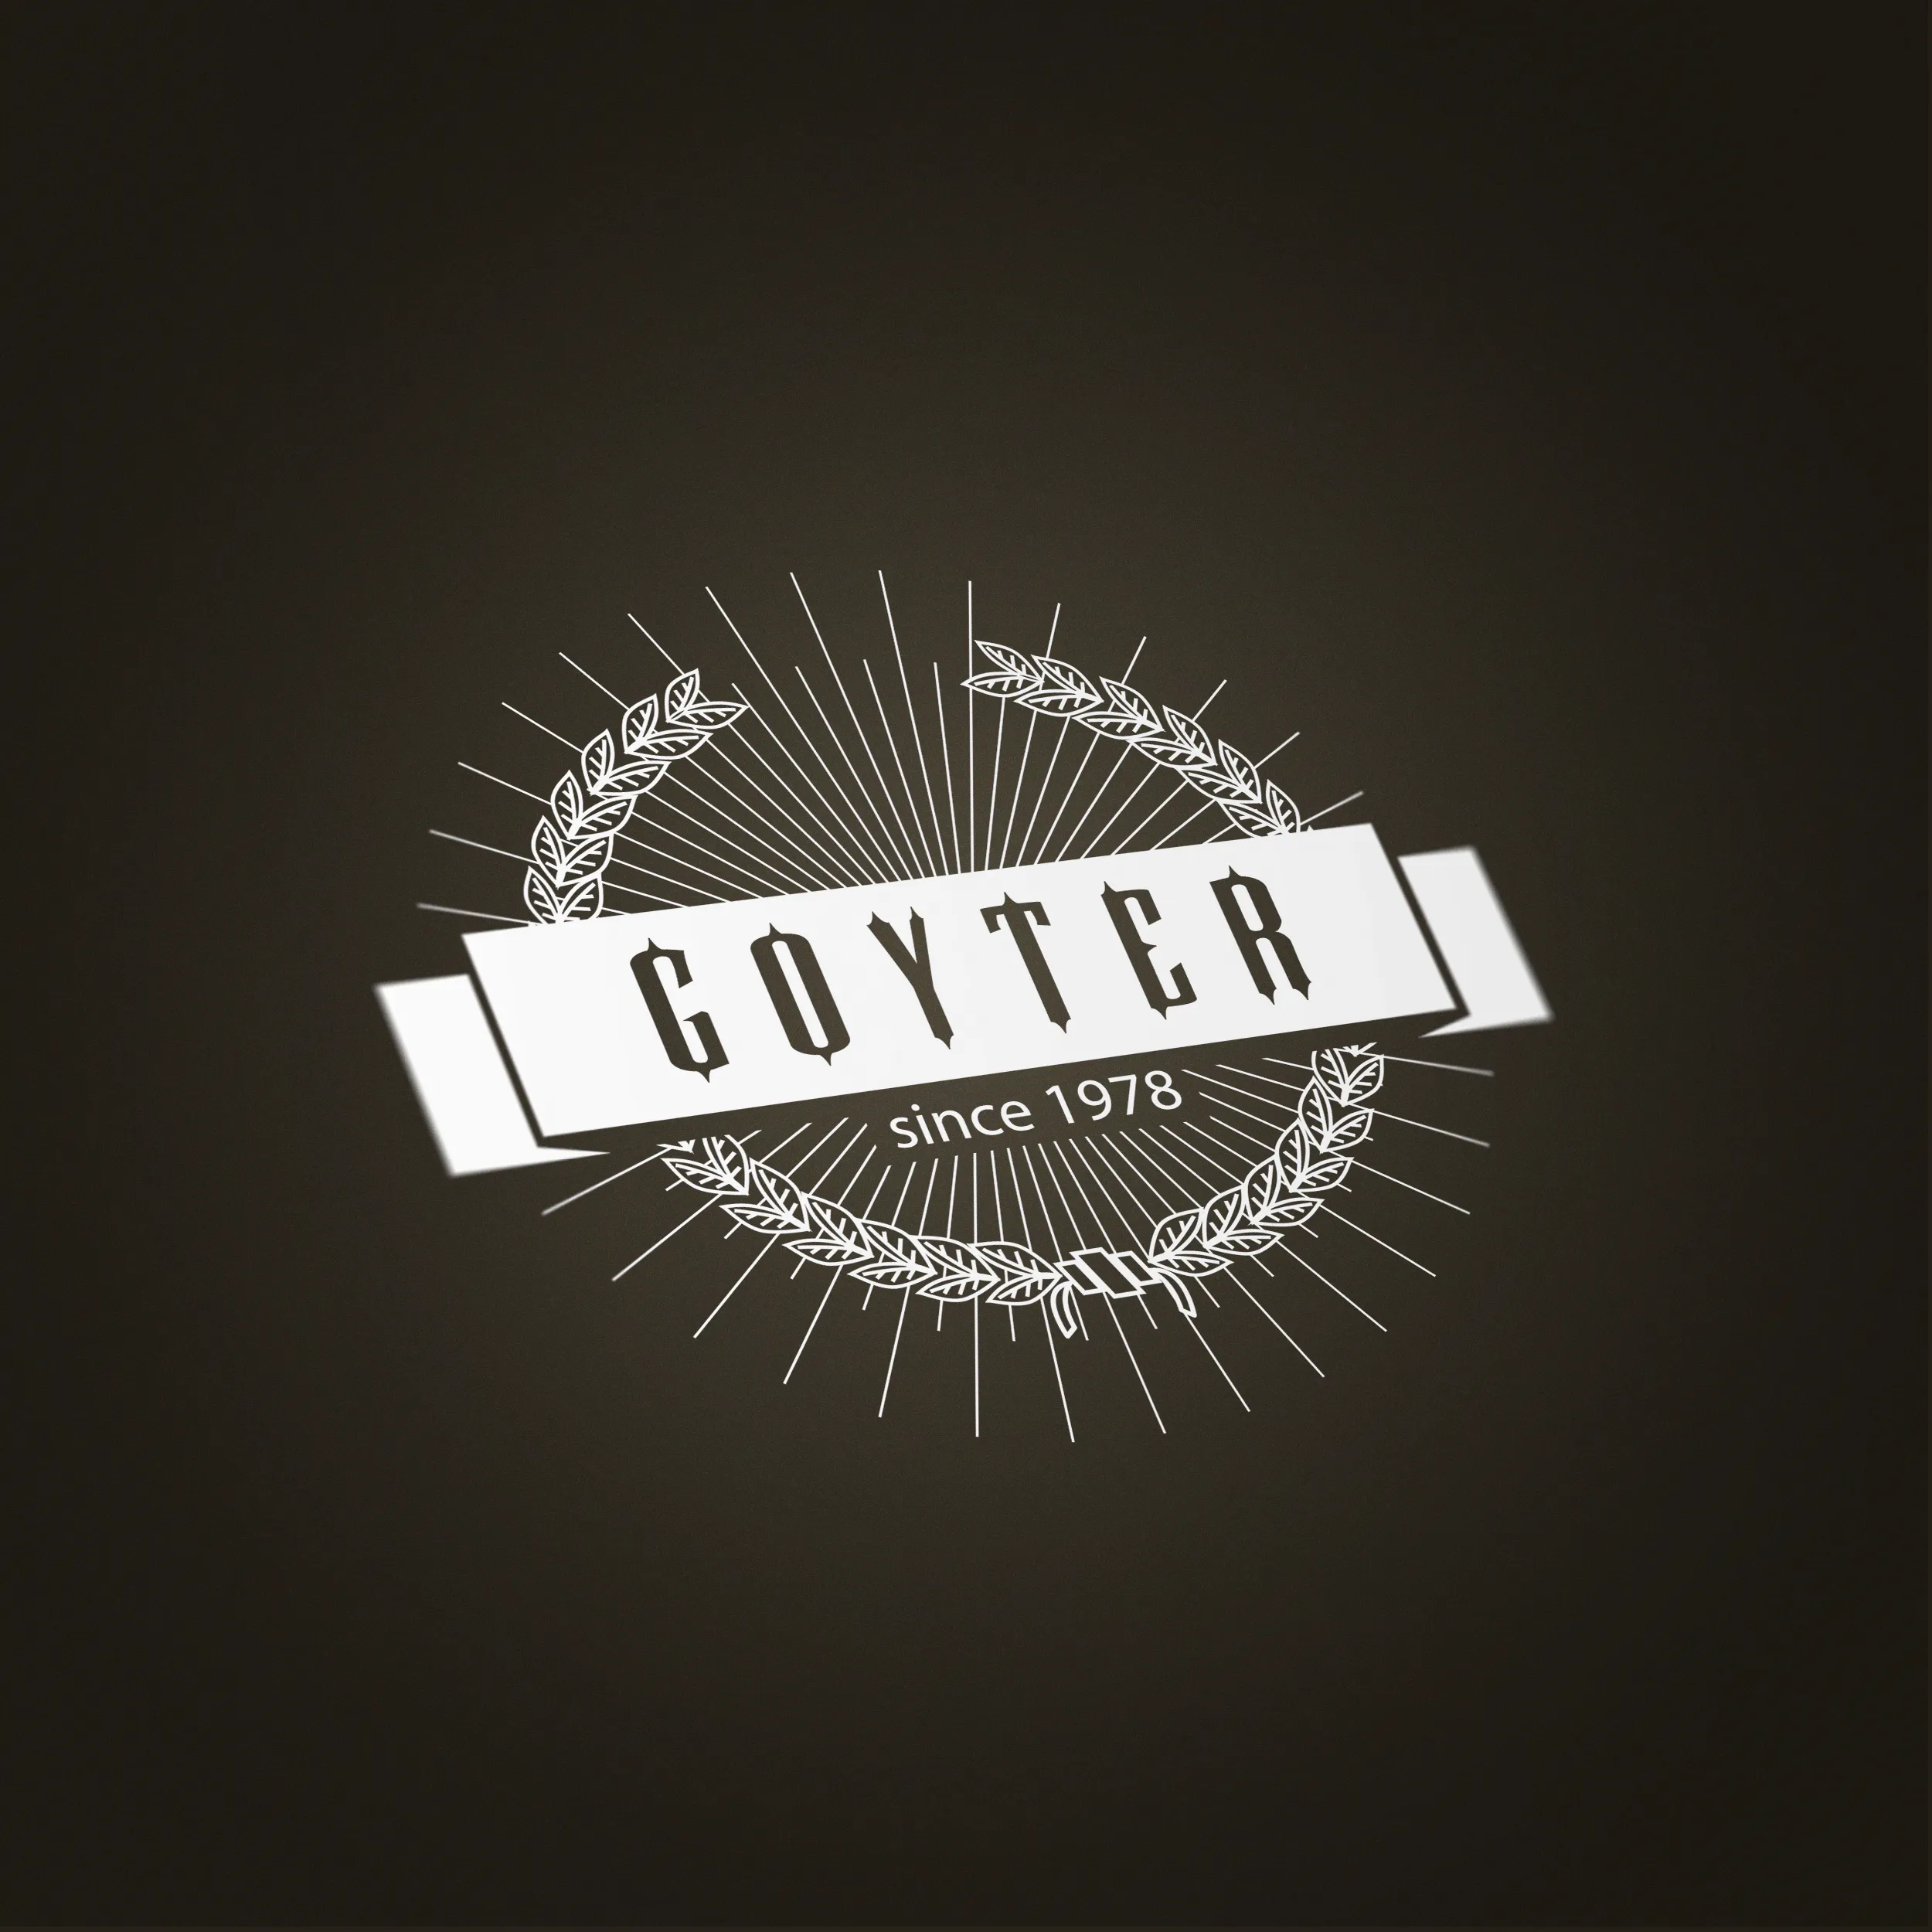 projet : Goyter logo v2